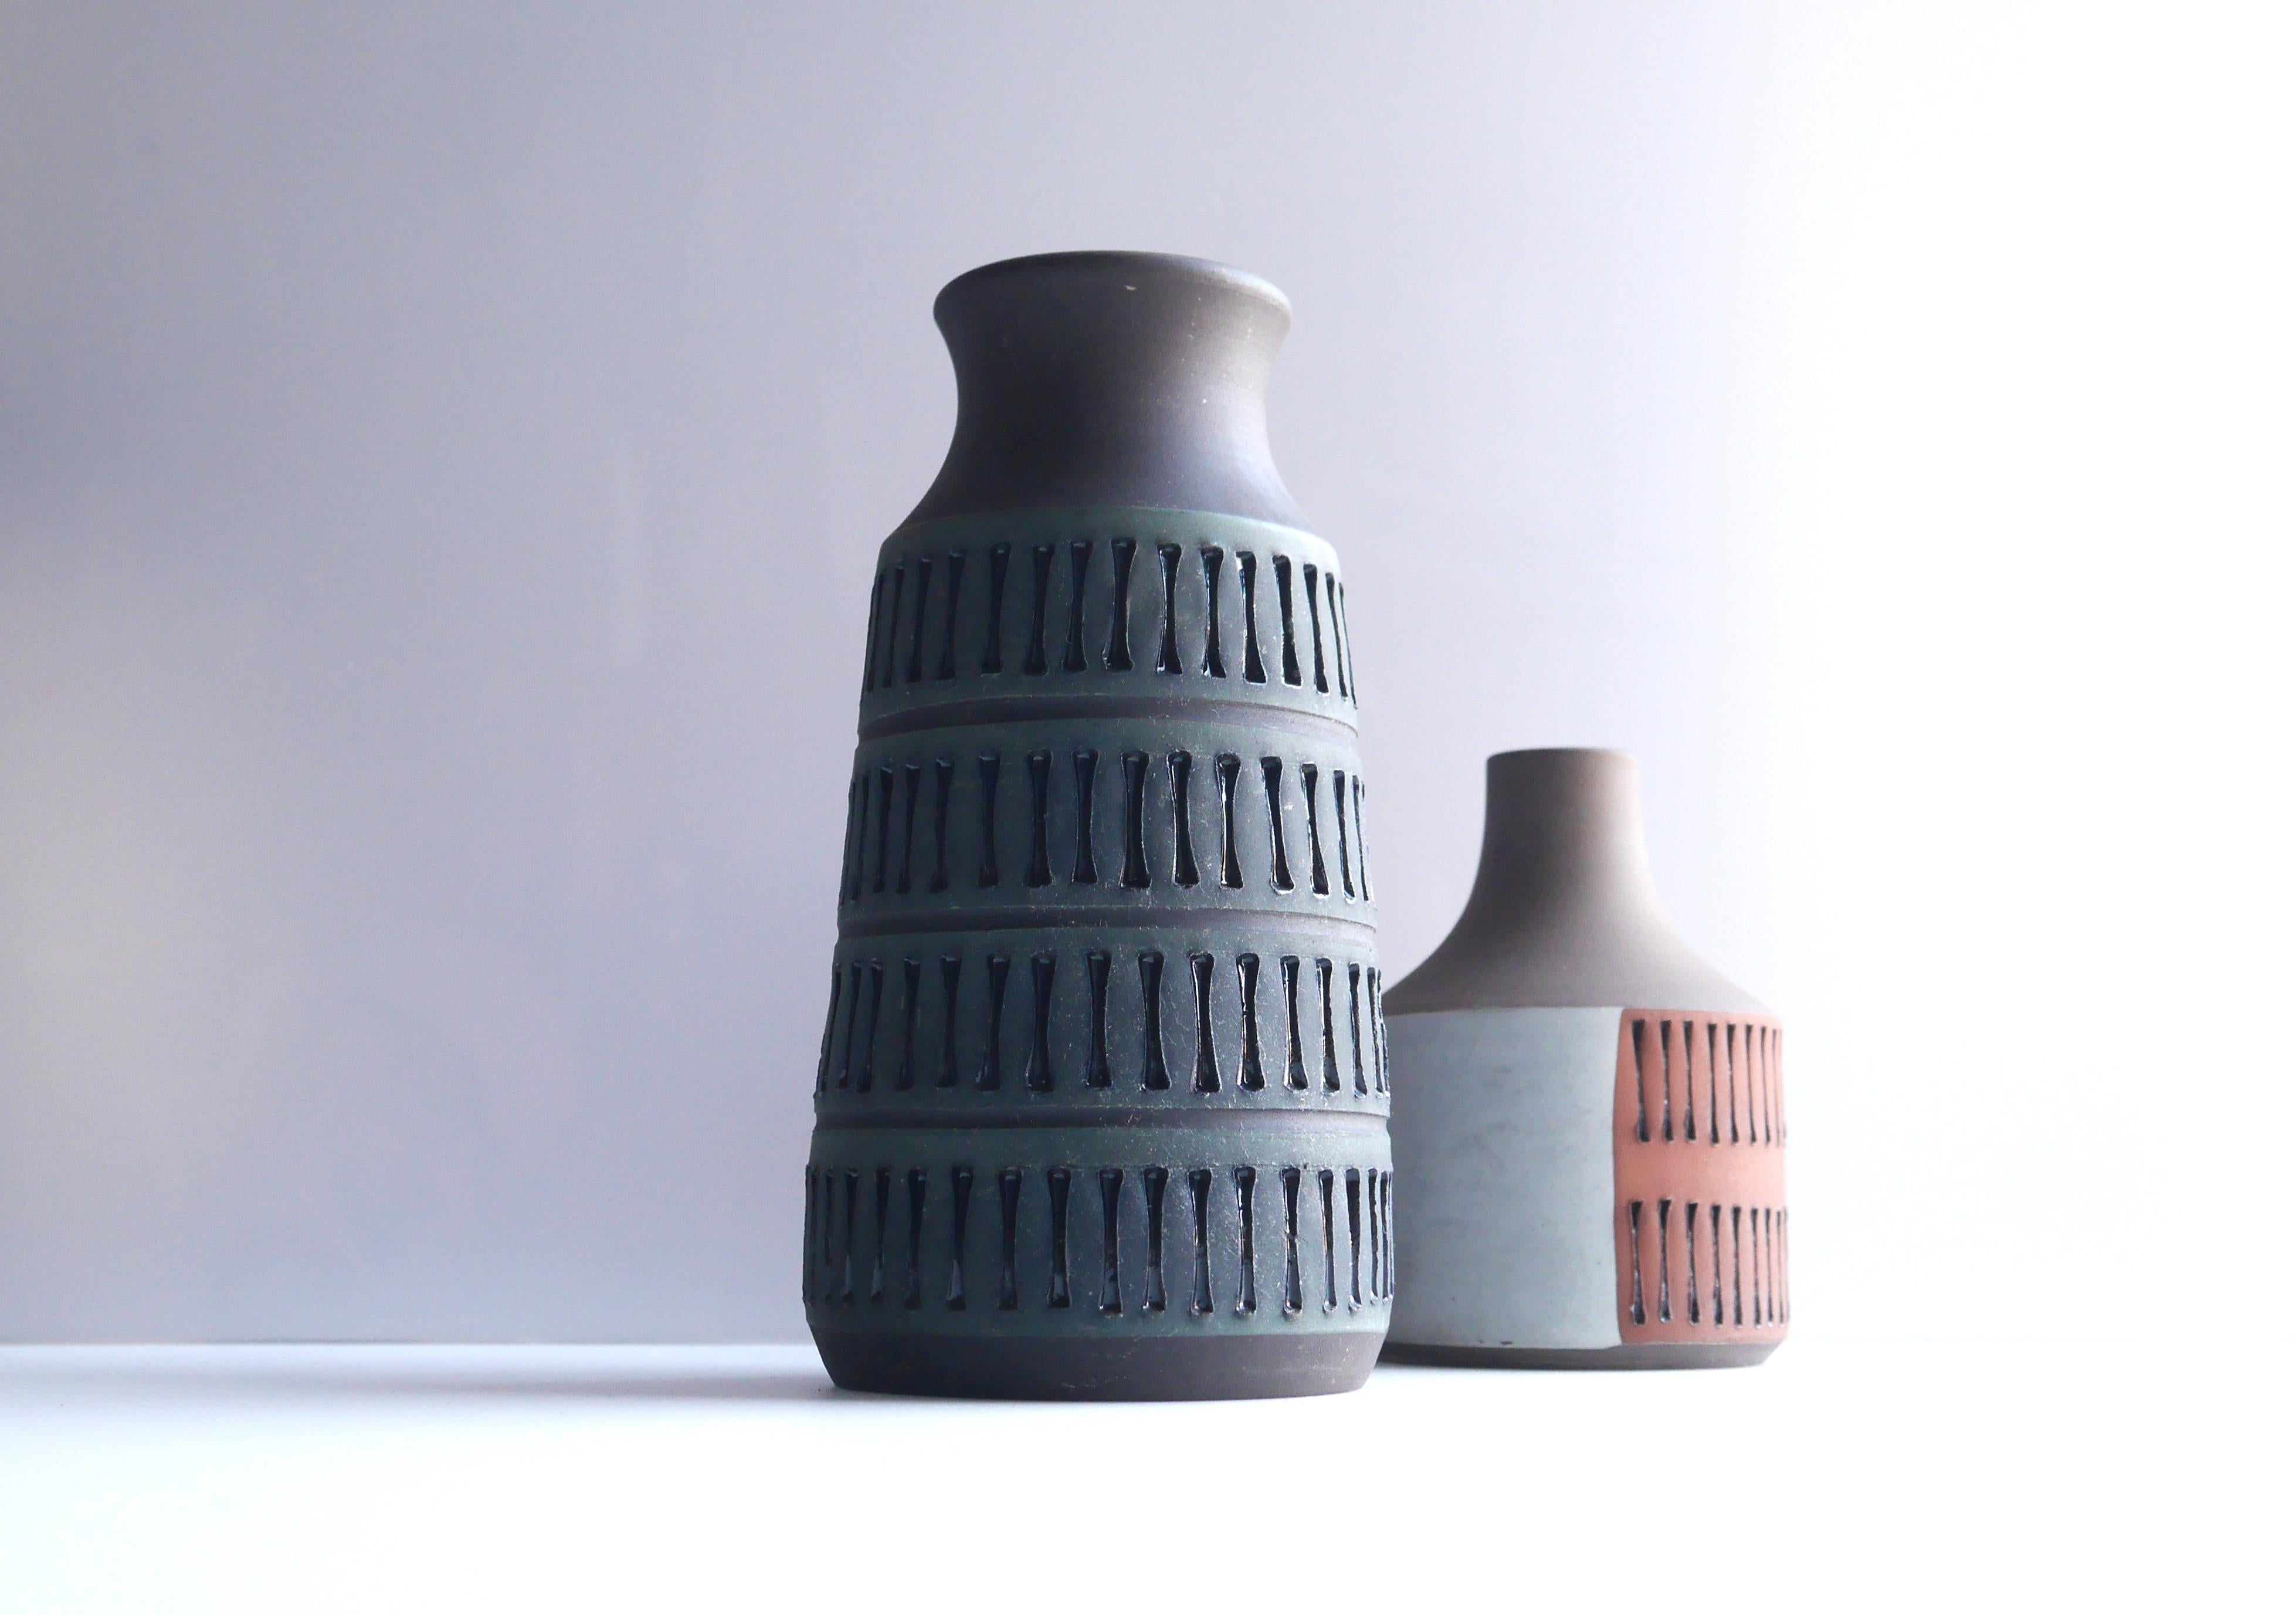 Un fantastique vase vintage en céramique d'art brutaliste, fait et dessiné à la main par Thomas Anagrius, pour Alingsås Keramik, Suède. Le vase a une belle couleur, un bleu denim foncé profond, des empreintes simples mais efficaces et une glaçure